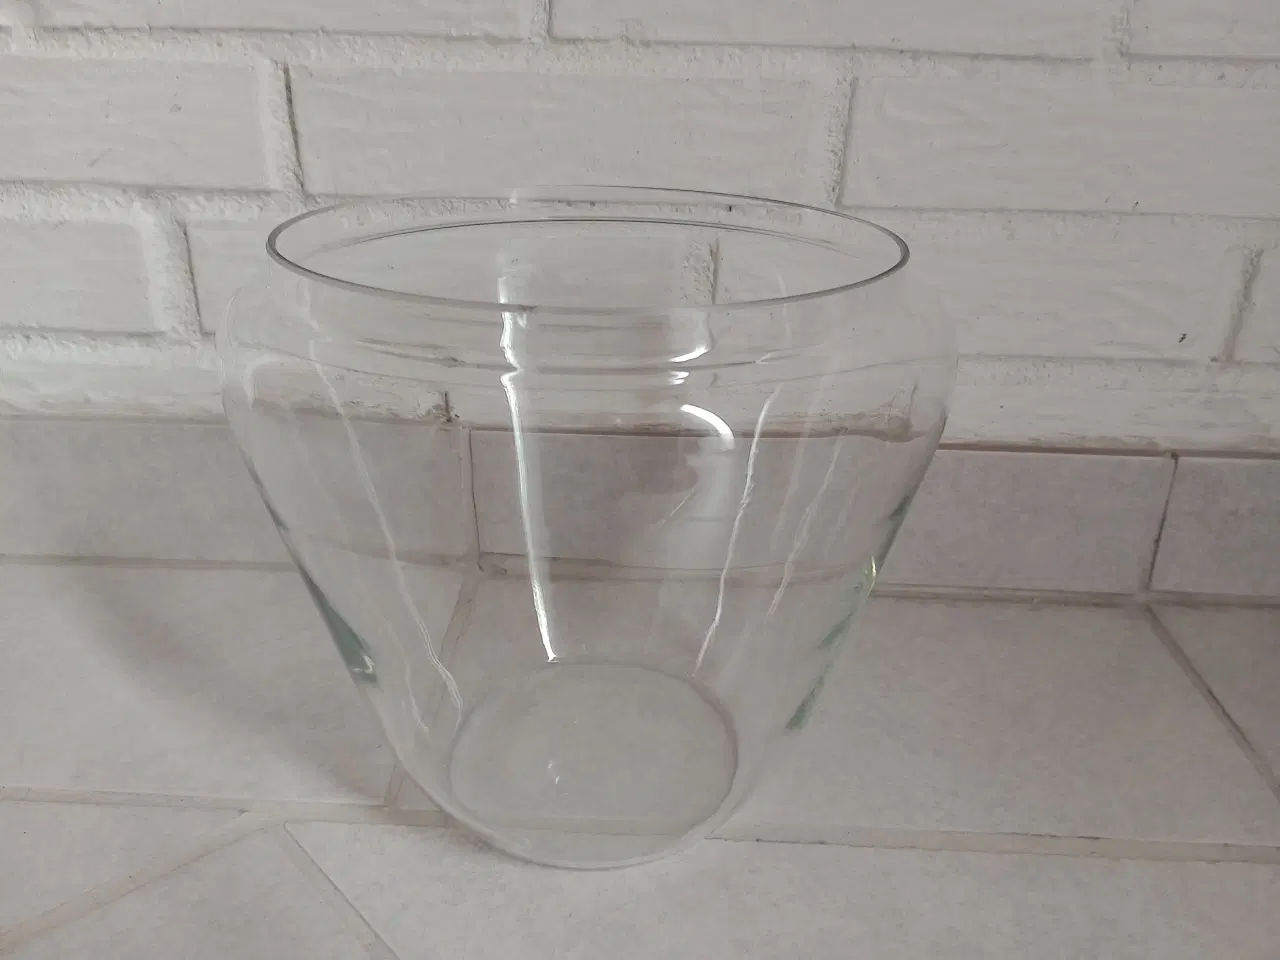 Billede 1 - Glas bowle. Velkomstdrik?